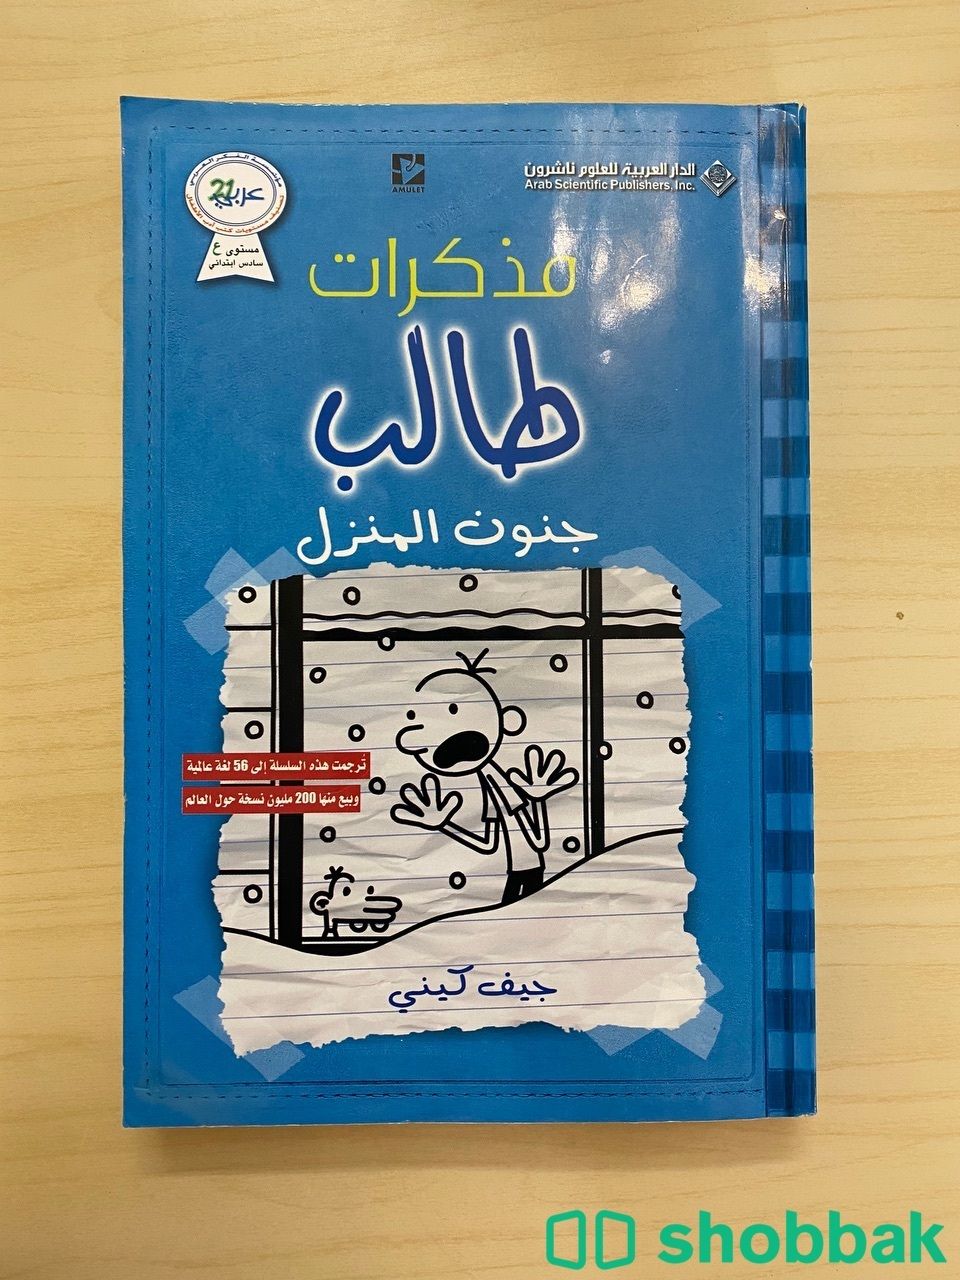 كتب مذكرات طالب بحالة جيدة جداً Shobbak Saudi Arabia